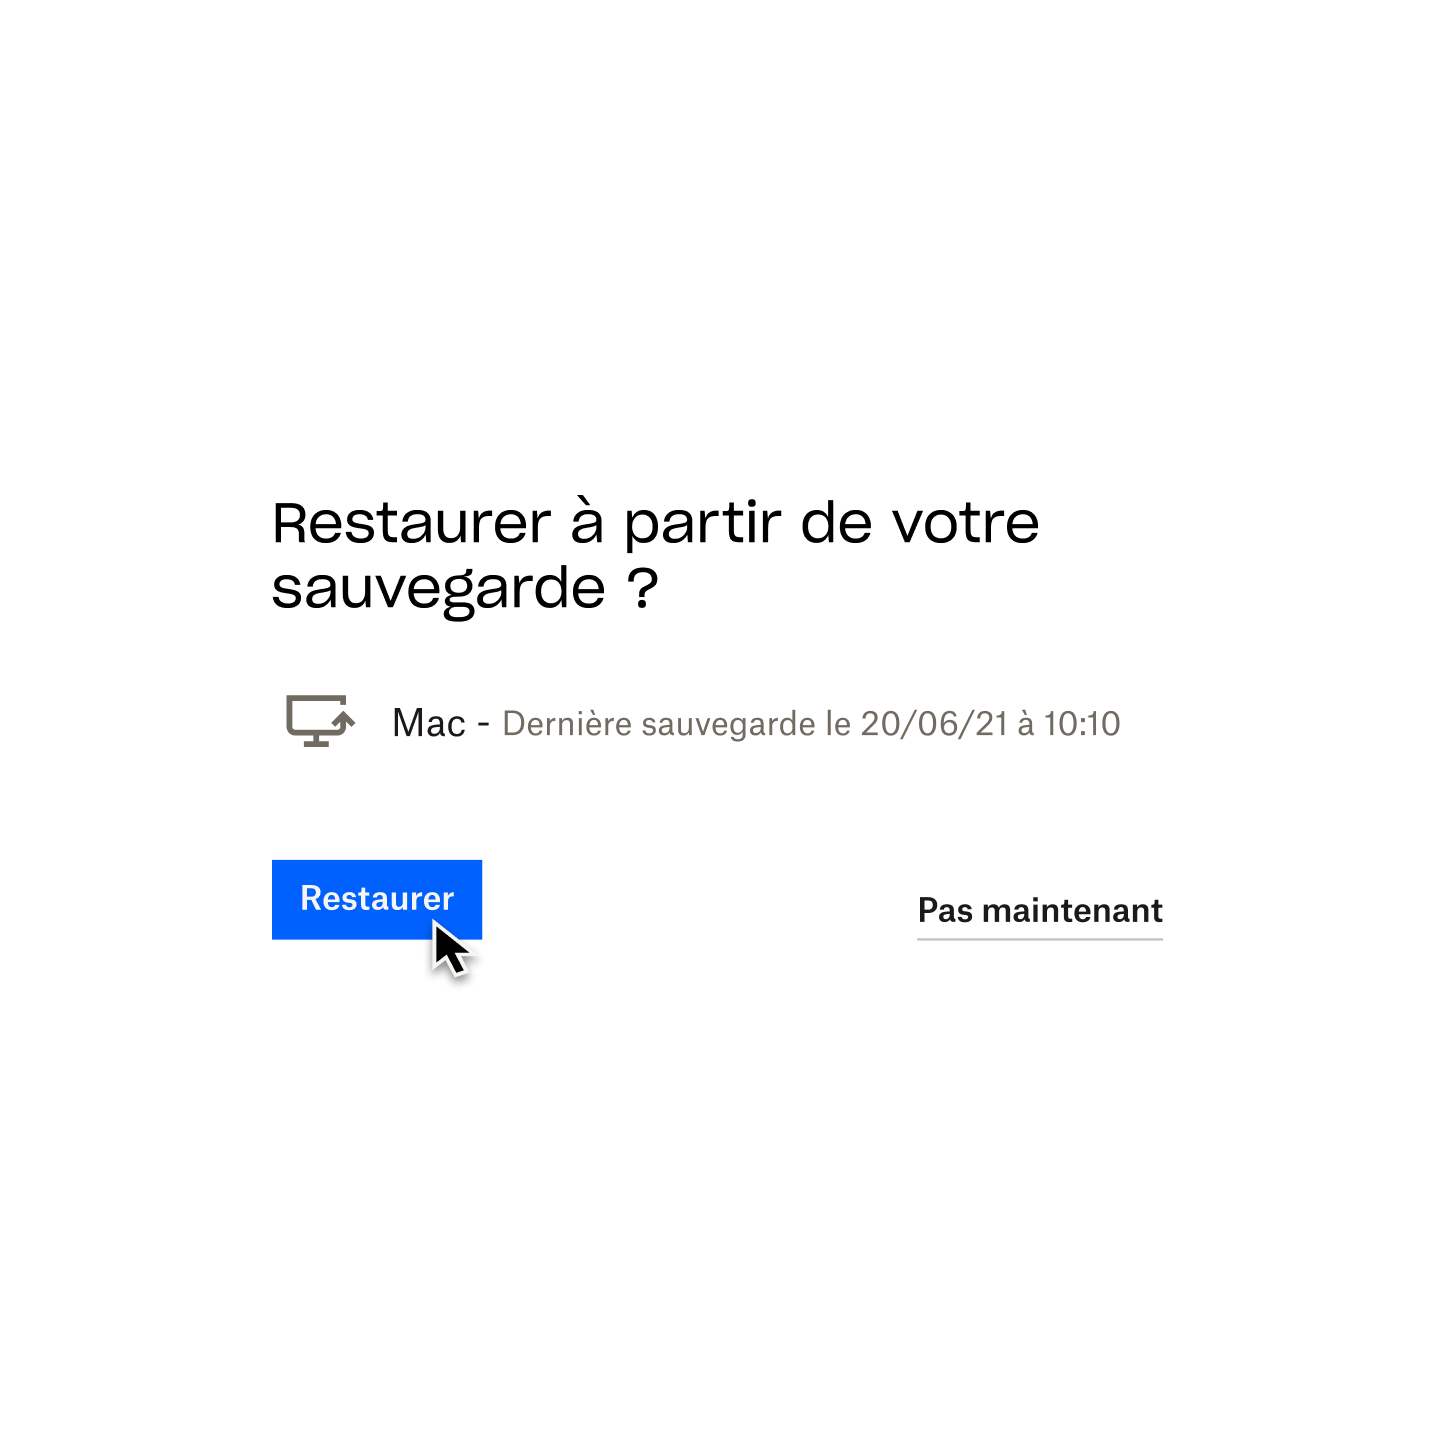 Utilisateur cliquant sur un bouton bleu indiquant “Restaurer” afin de restaurer la dernière version du contenu de son Mac sauvegardée dans Dropbox Backup